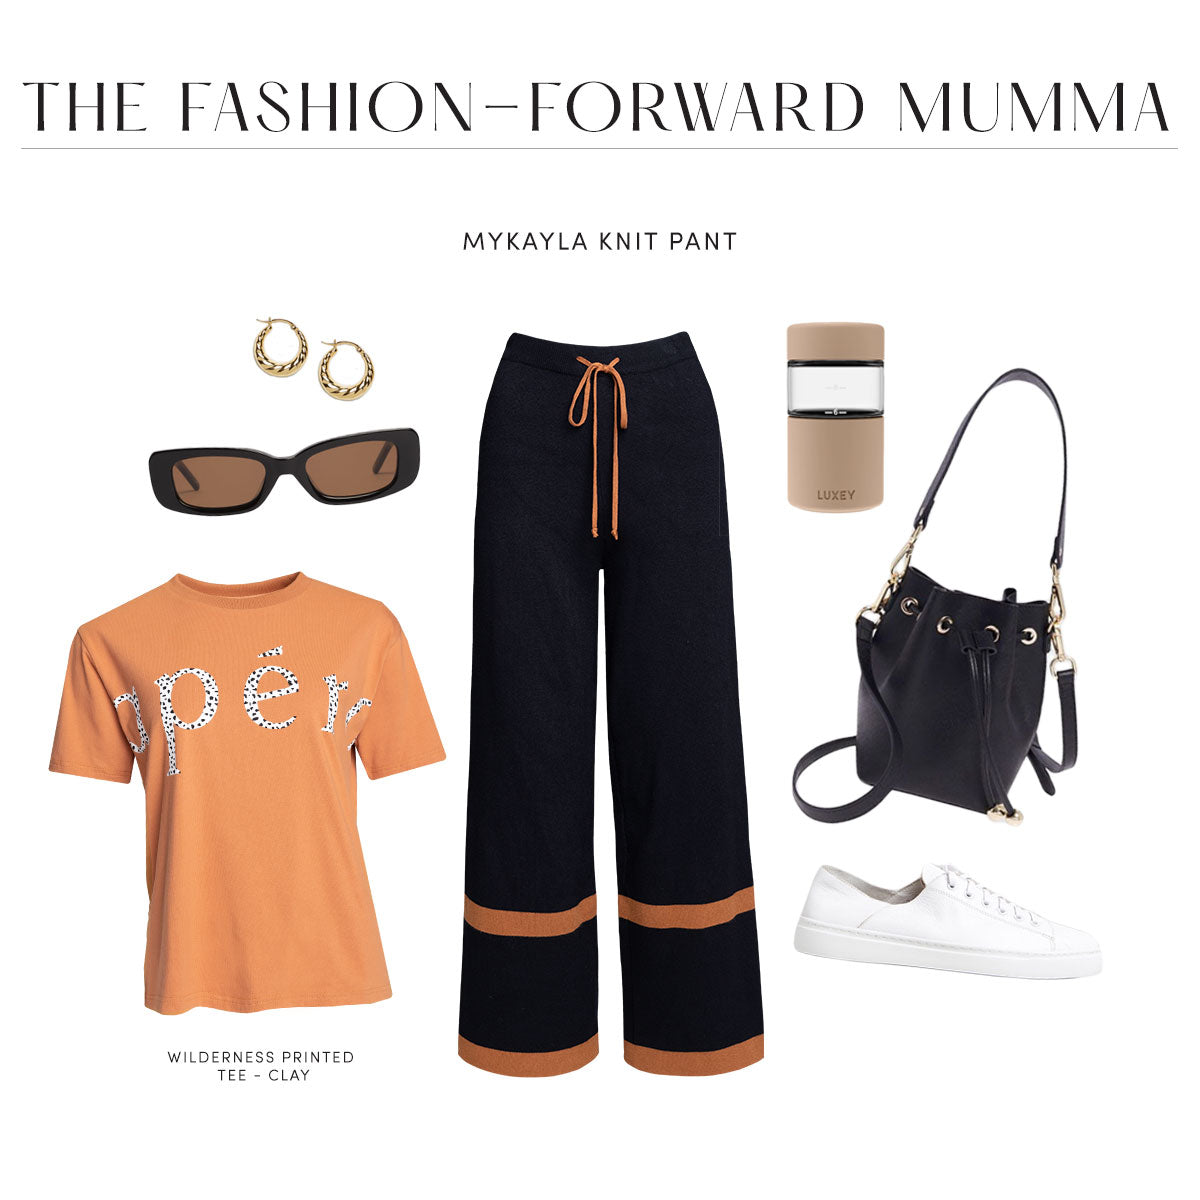 The Fashion-Foward Mumma